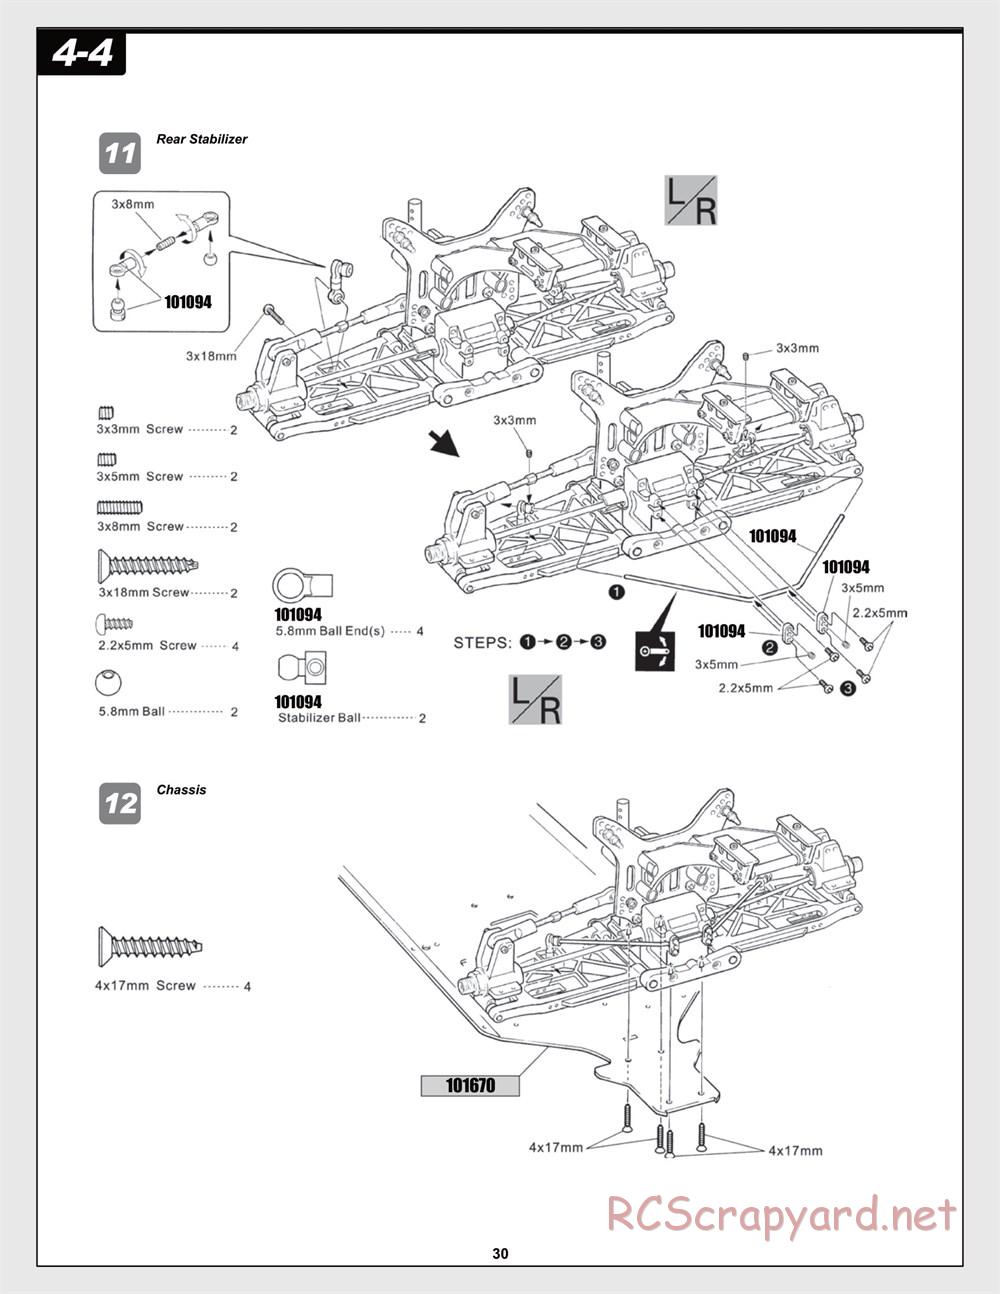 HPI - Trophy Flux Buggy - Manual - Page 30